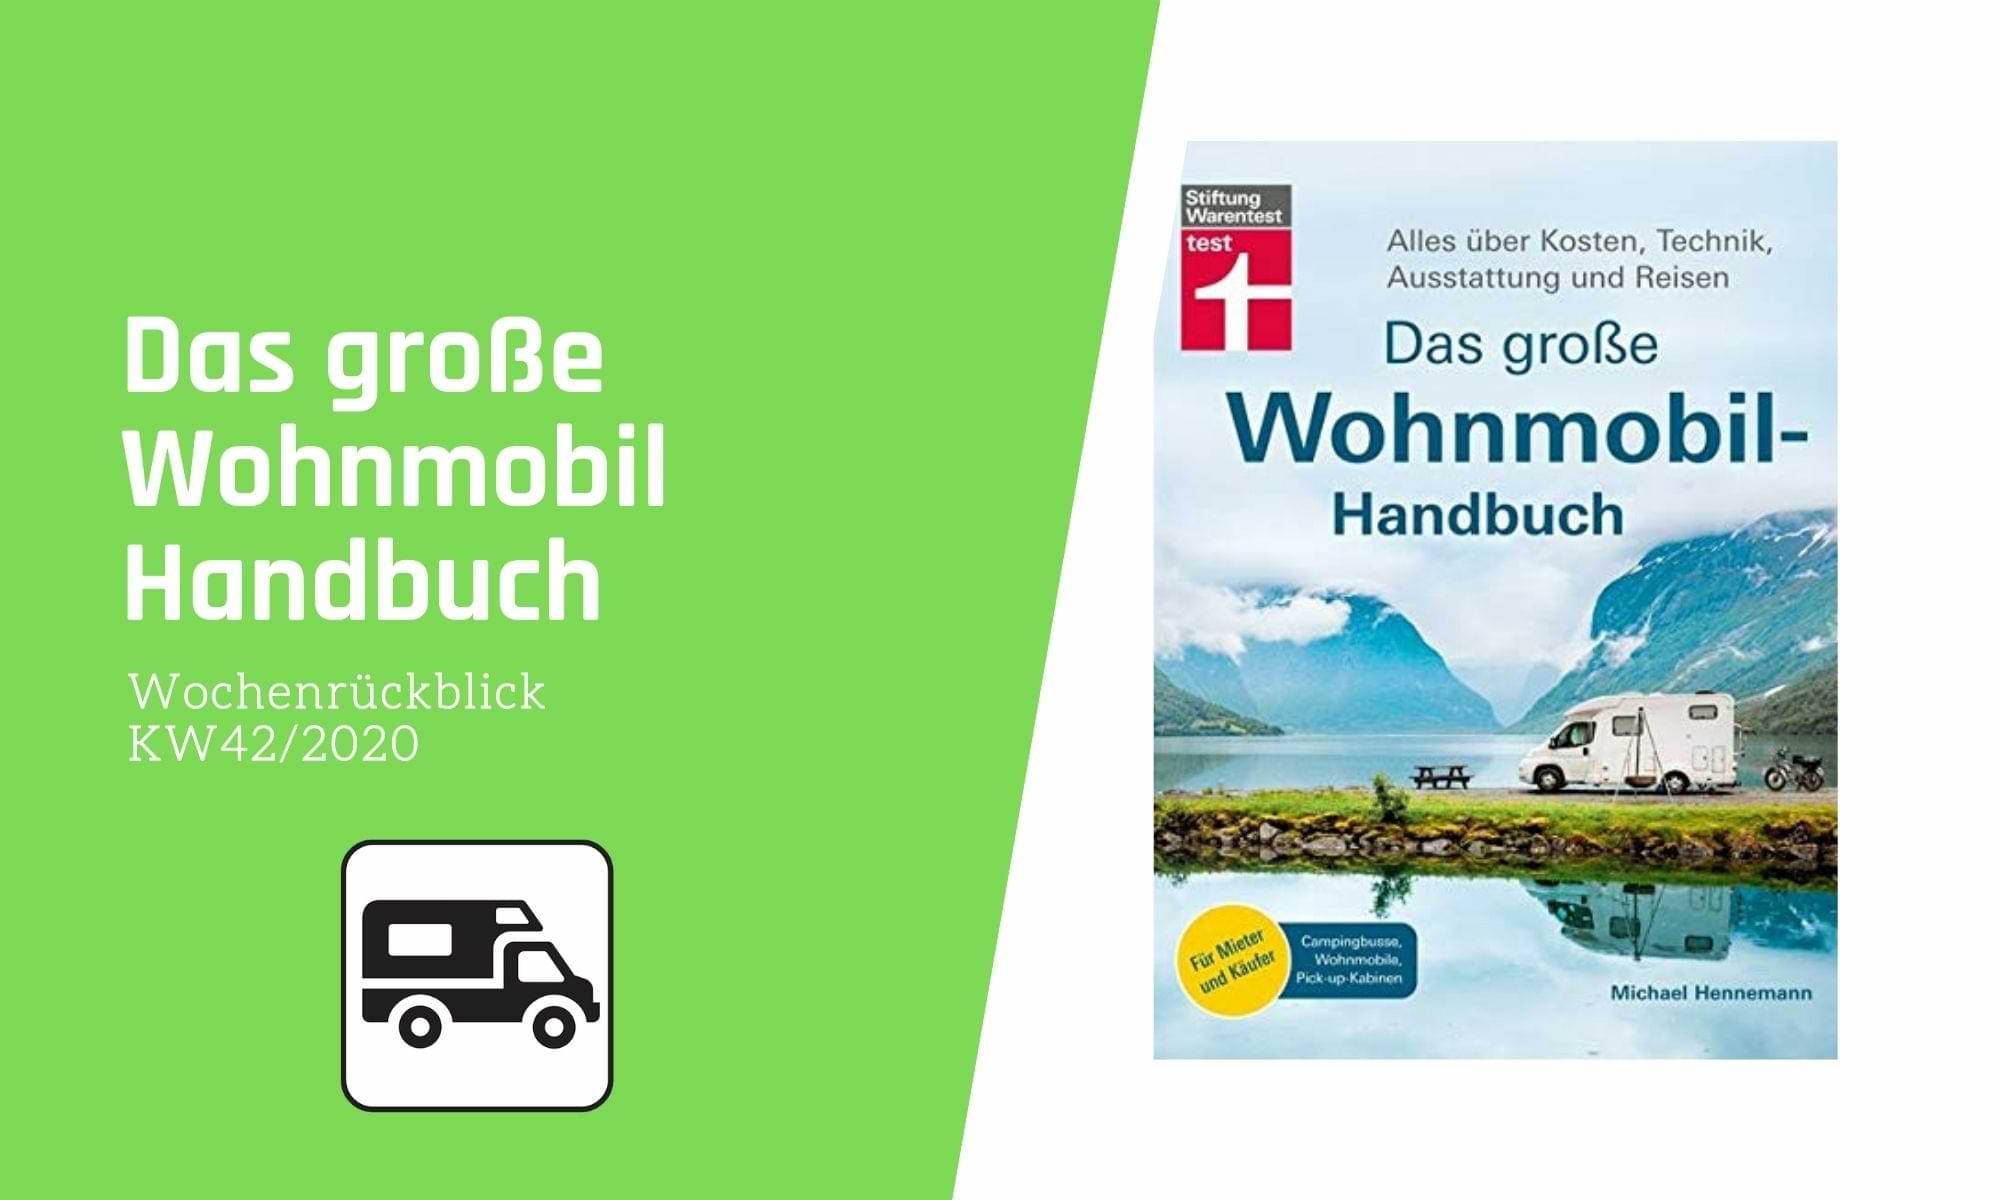 Das große Wohnmobil Handbuch | Camping News Wochenrückblick – KW42/2020